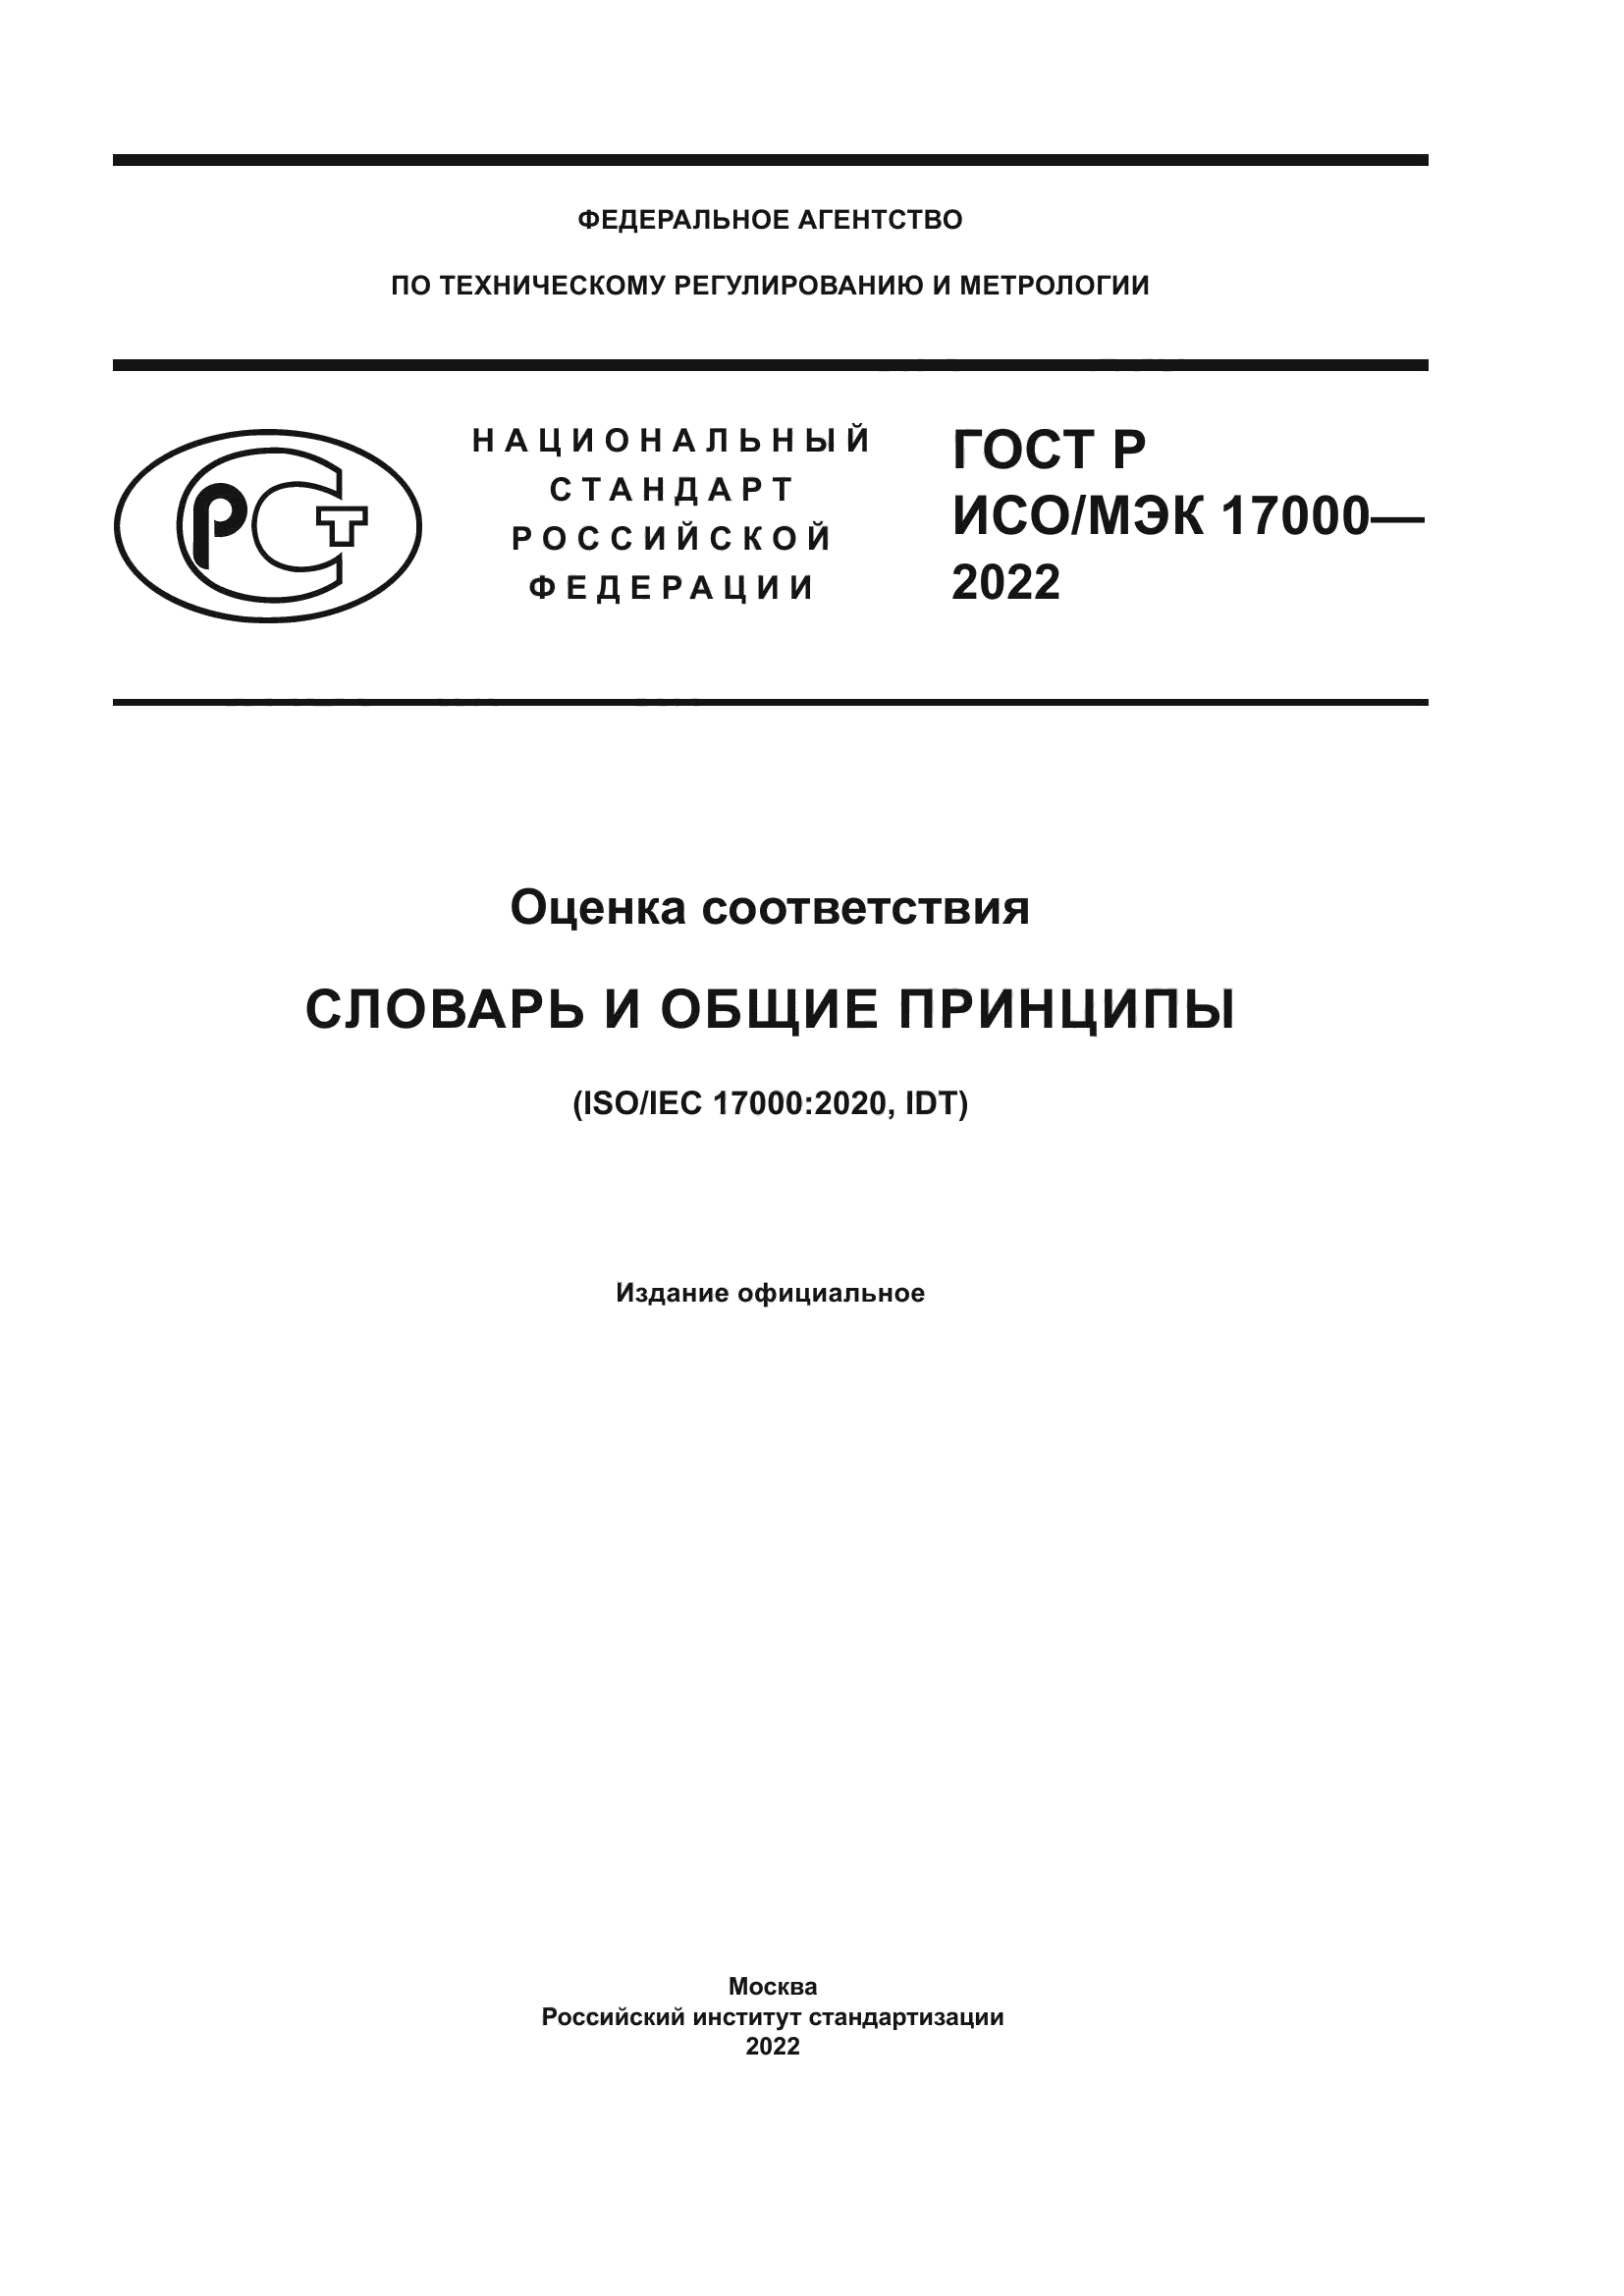 ГОСТ Р ИСО/МЭК 17000-2022